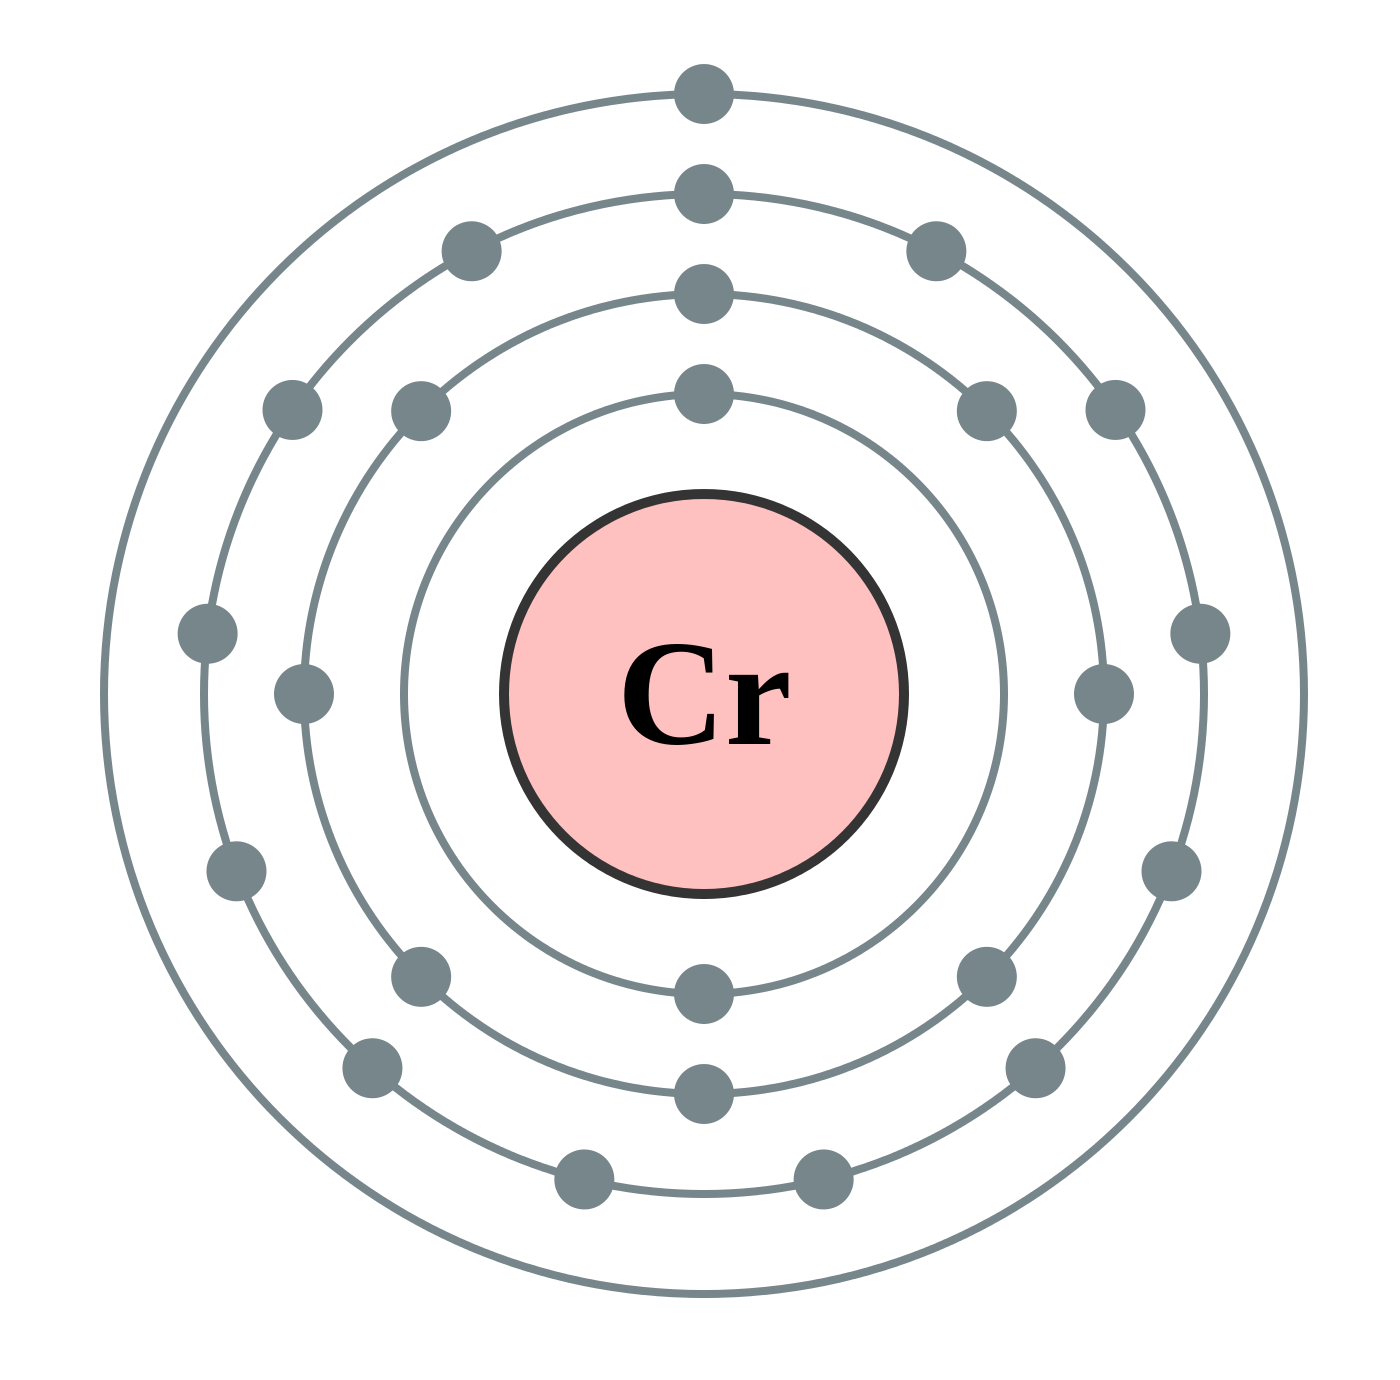 element chromium uses